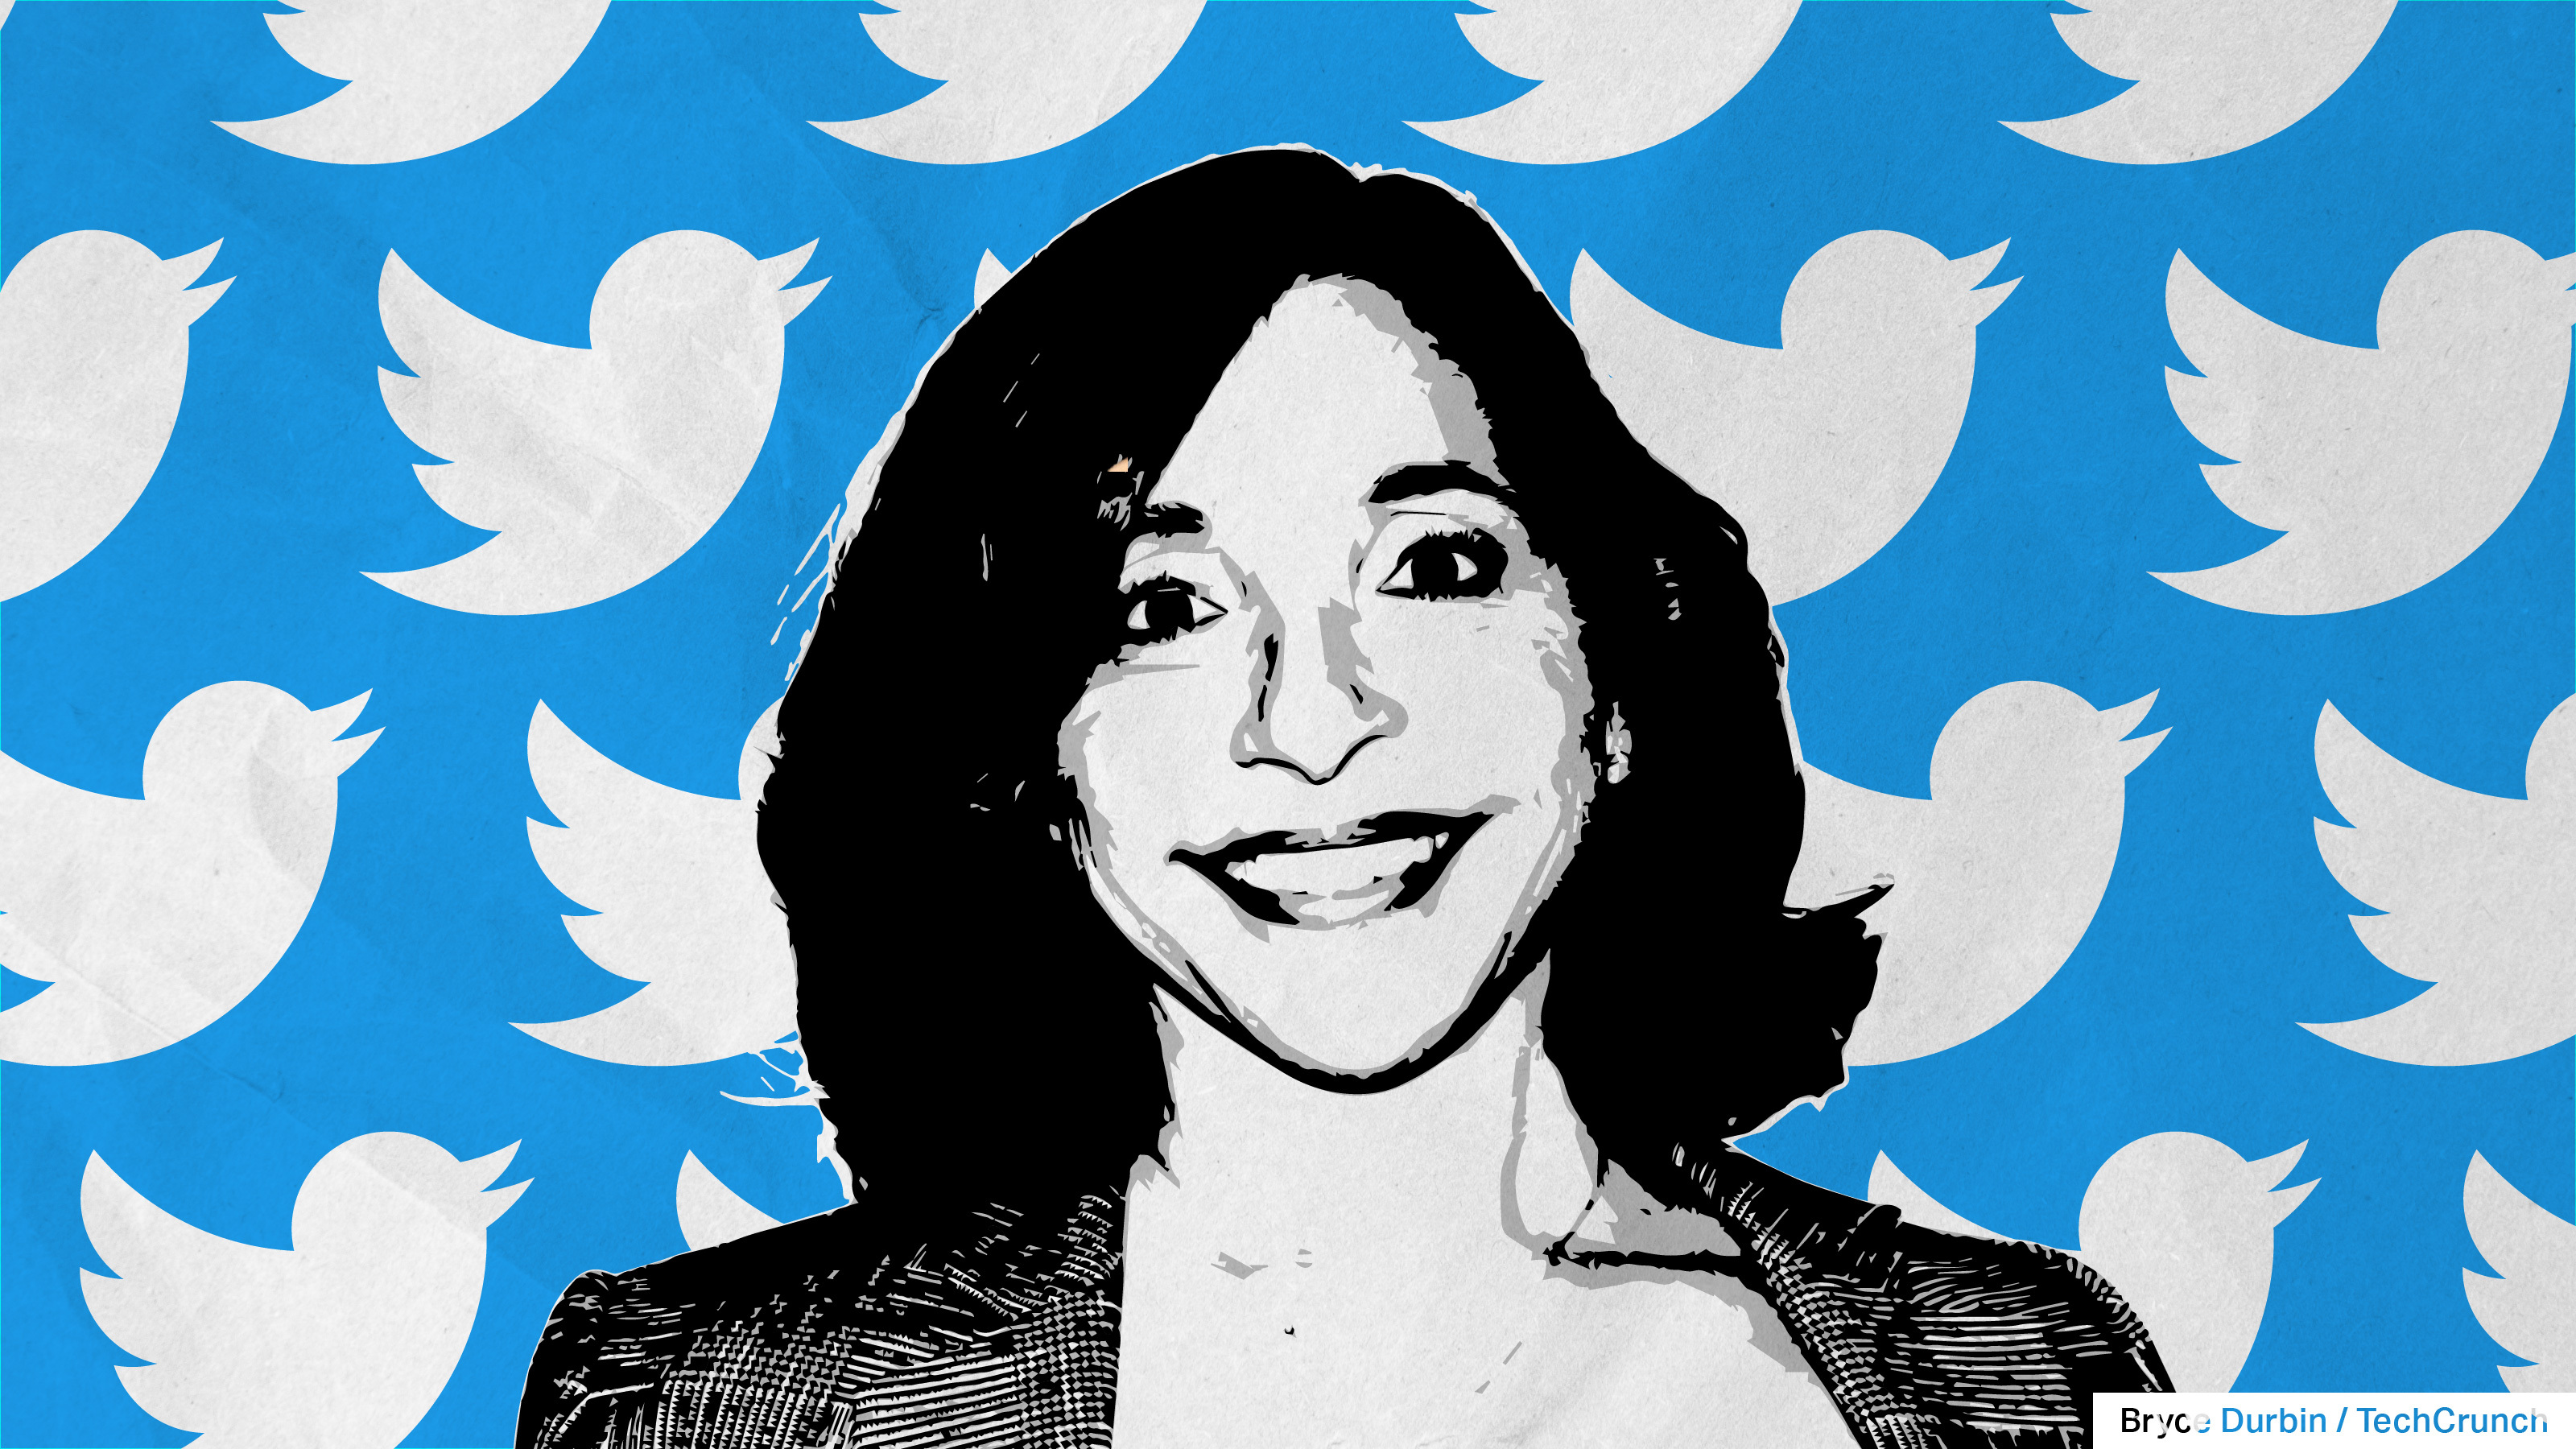 Image de Linda Yaccarino avec des oiseaux Twitter en arrière-plan, représentant le nouveau PDG de Twitter